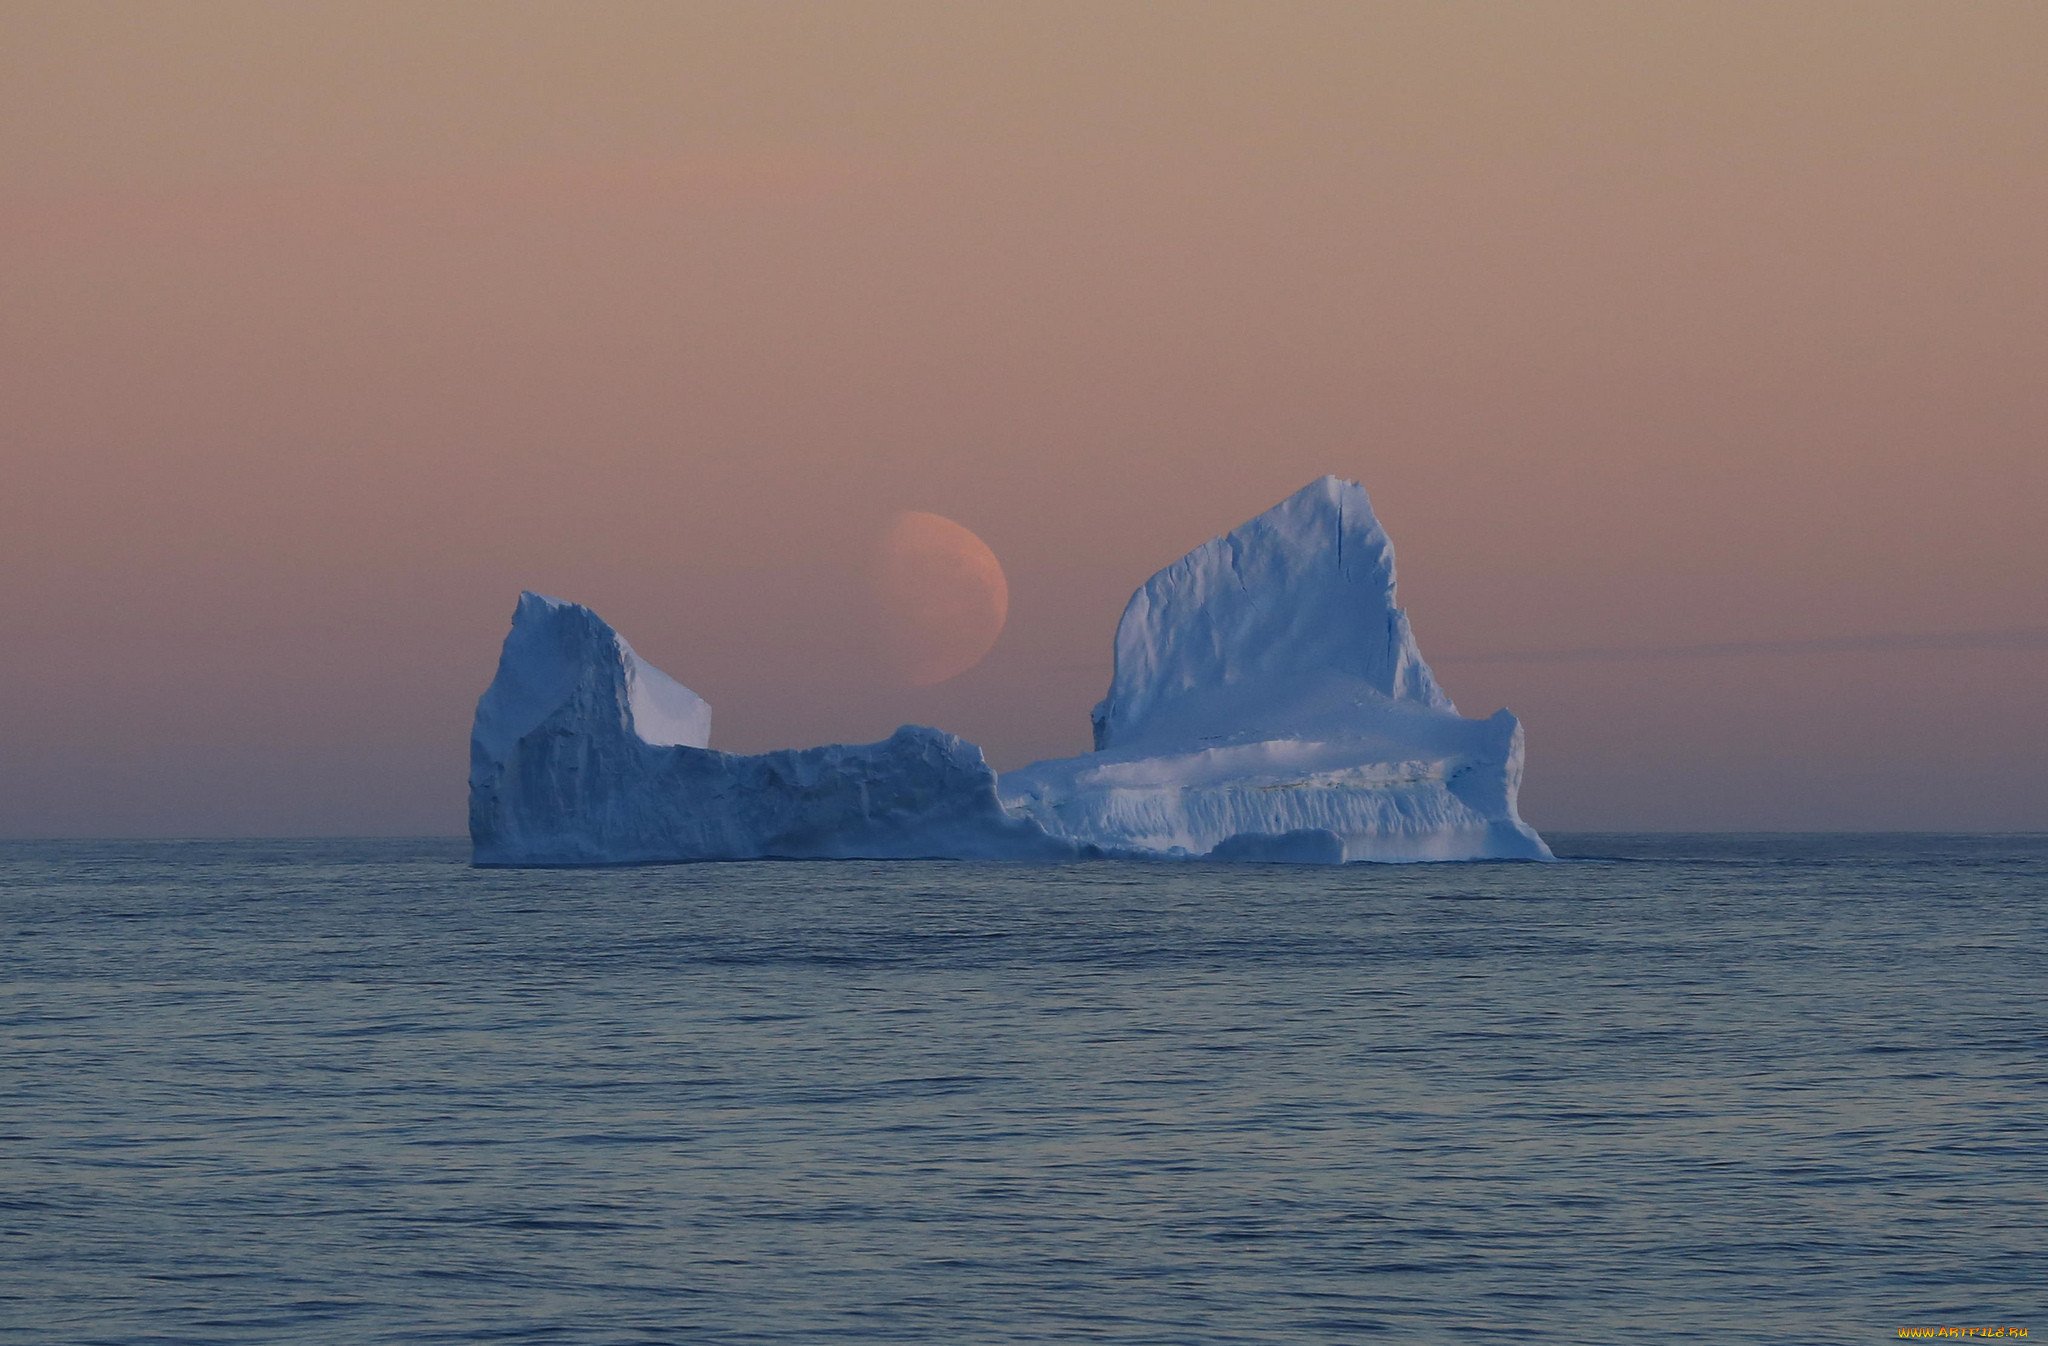 Назвали южным океаном. Южный Ледовитый океан. Море Росса Антарктида. Мыс Моррис-Джесуп. Южный океан айсберги.